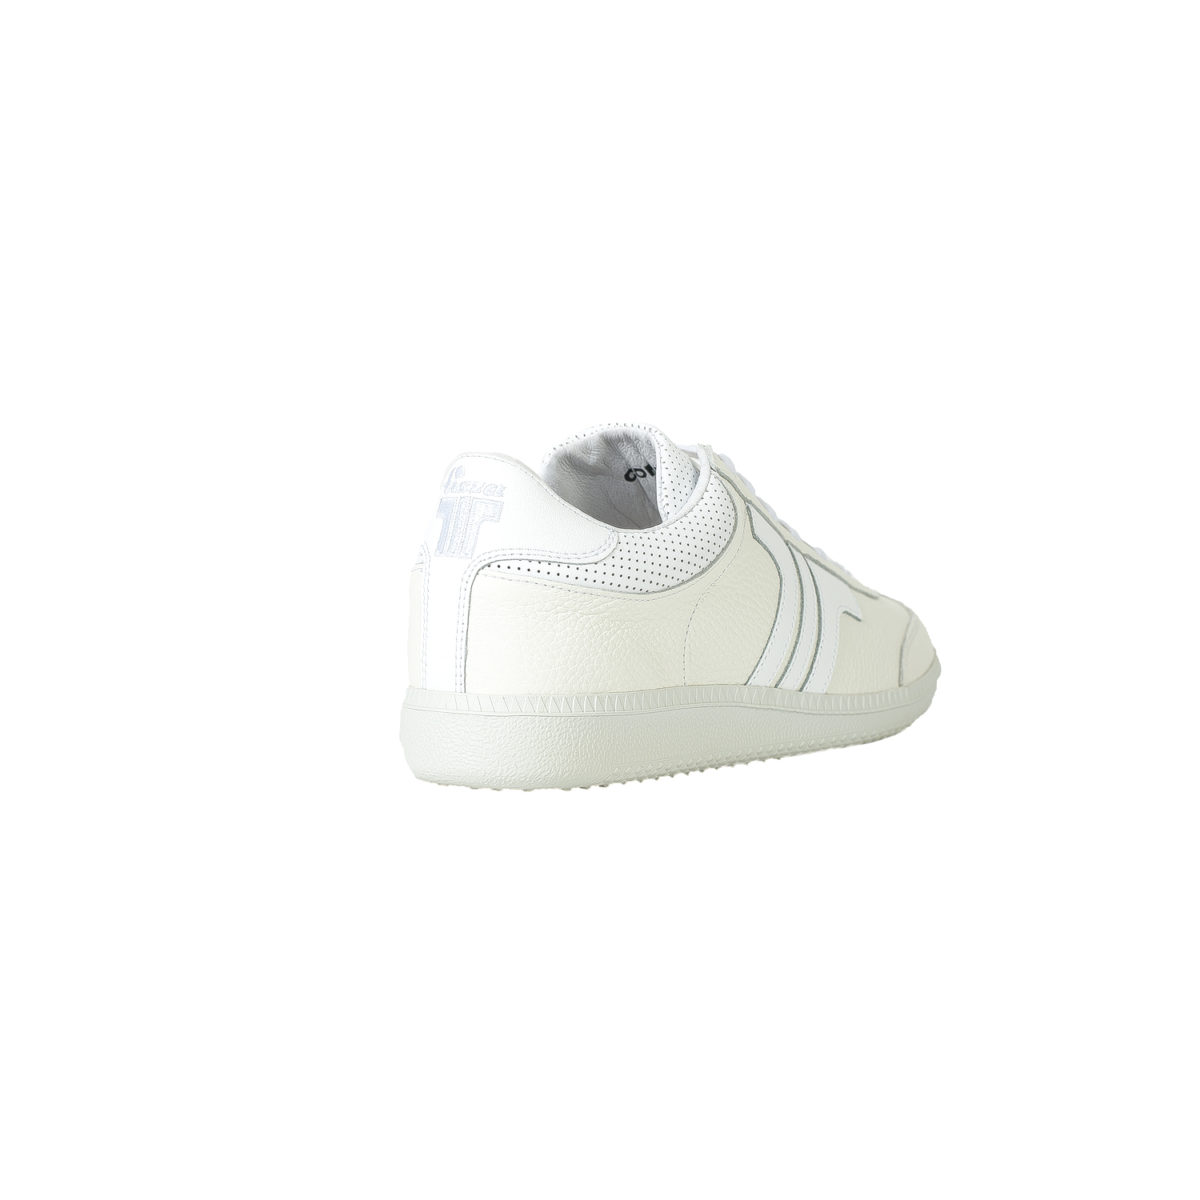 Tisza shoes-Compakt-White